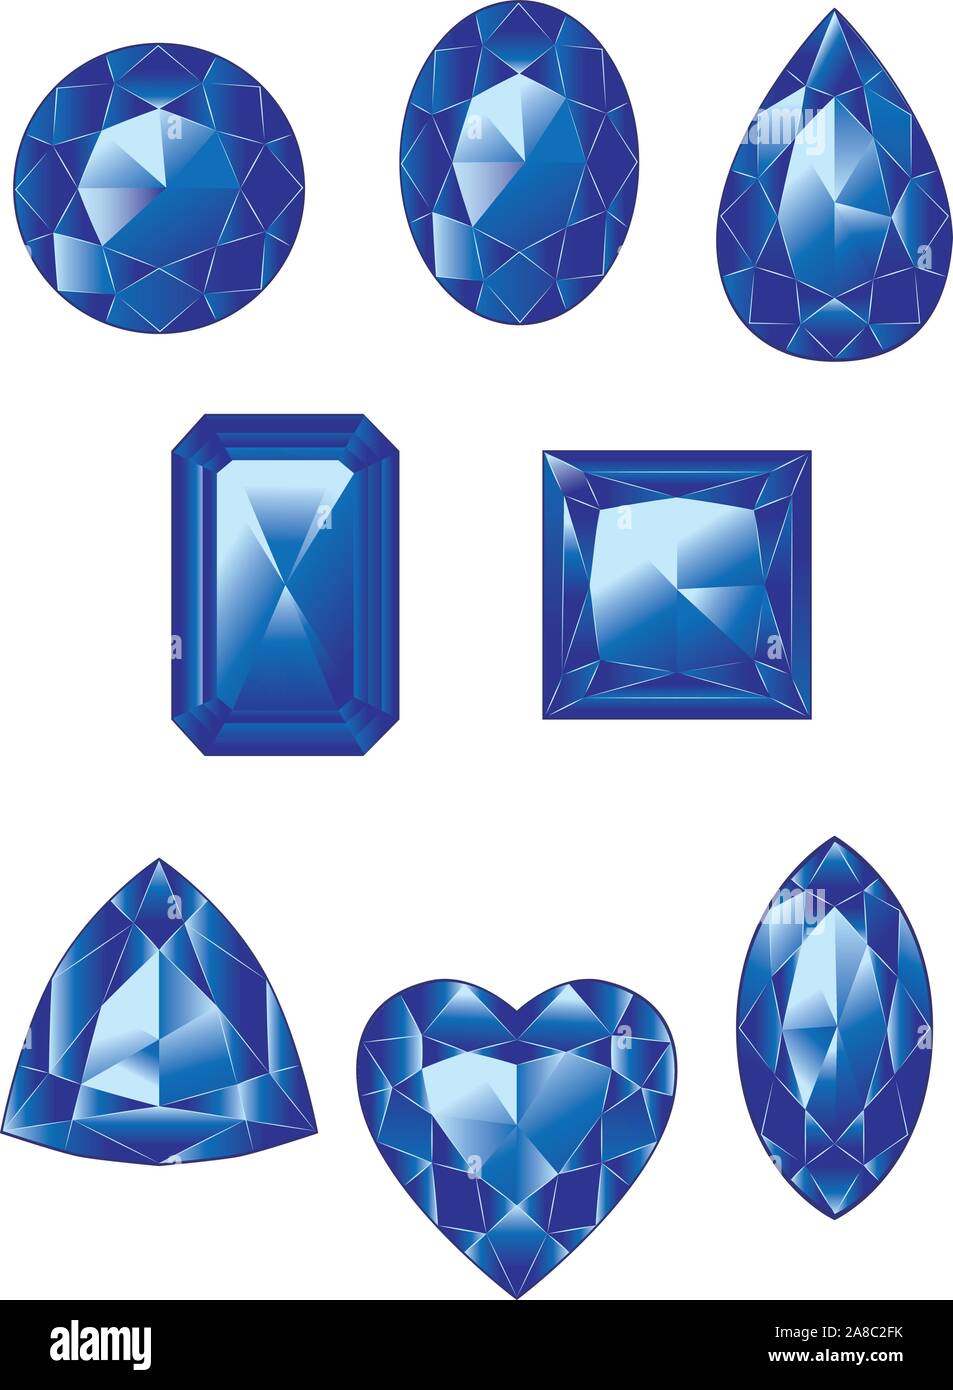 Kostbare edelsteine, kristalle blaue Farbe in verschiedenen Formen Kollektion. Stock Vektor